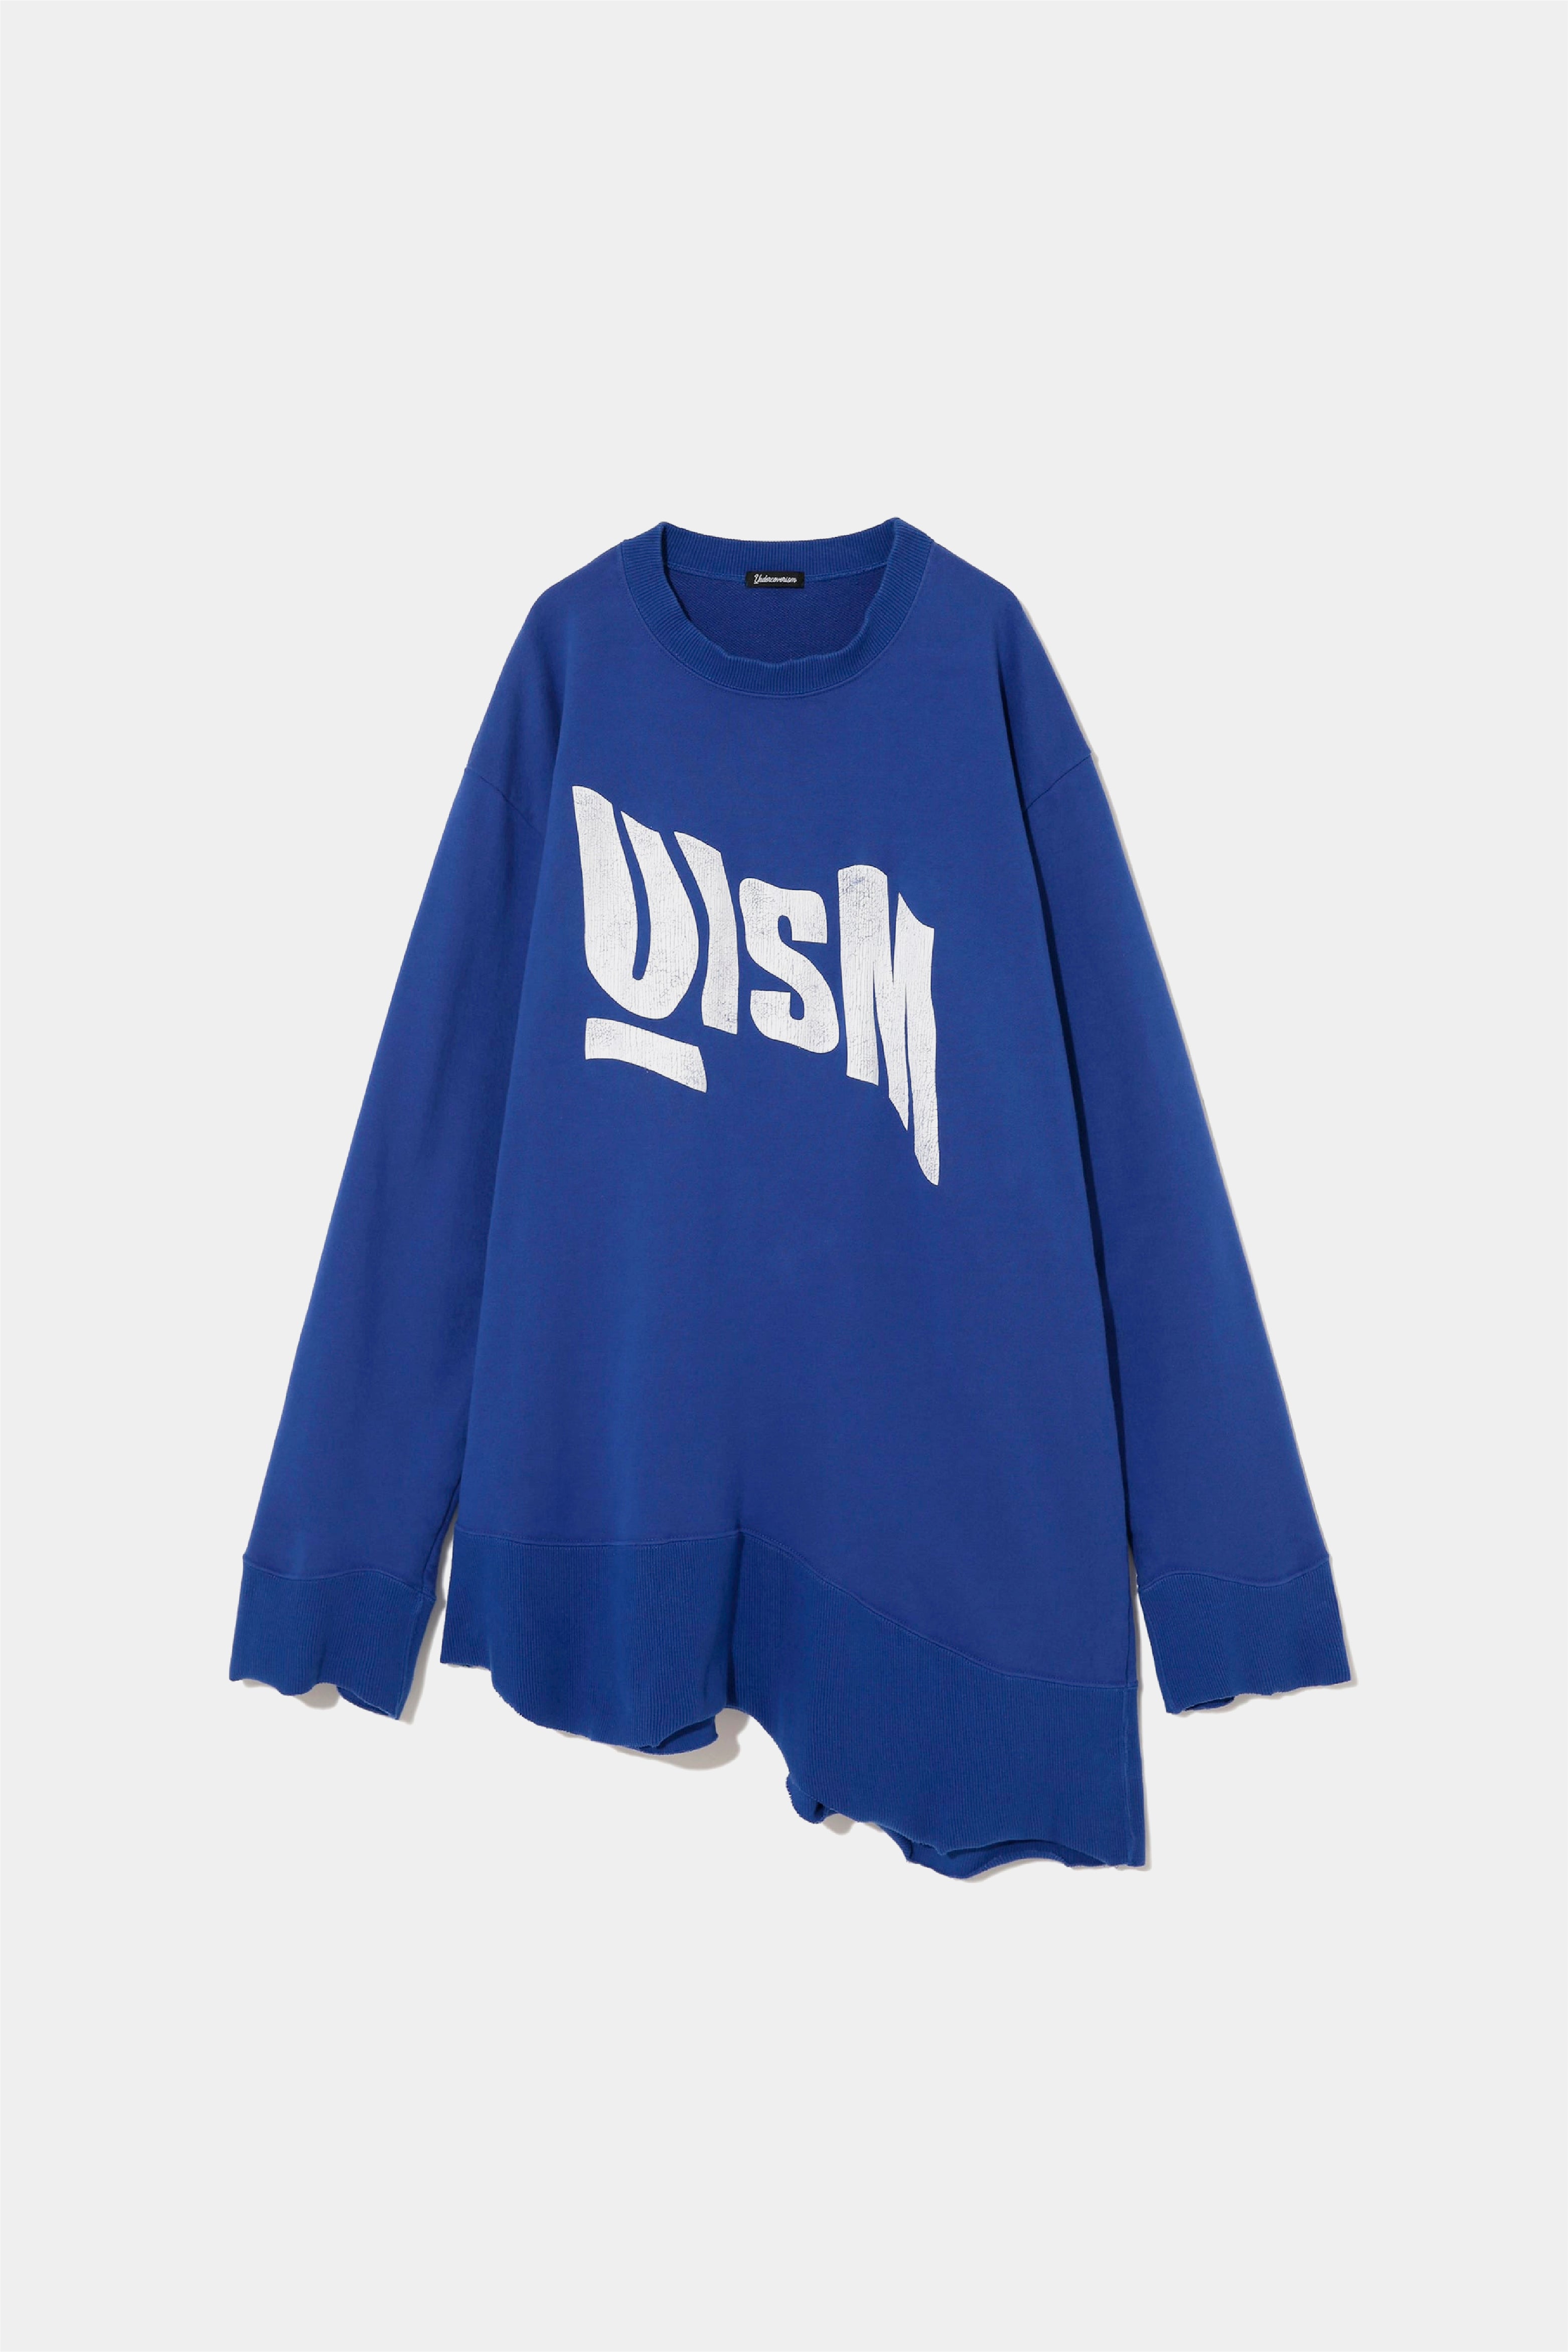 Selectshop FRAME - UNDERCOVERISM Sweatshirt Sweats-knits Concept Store Dubai